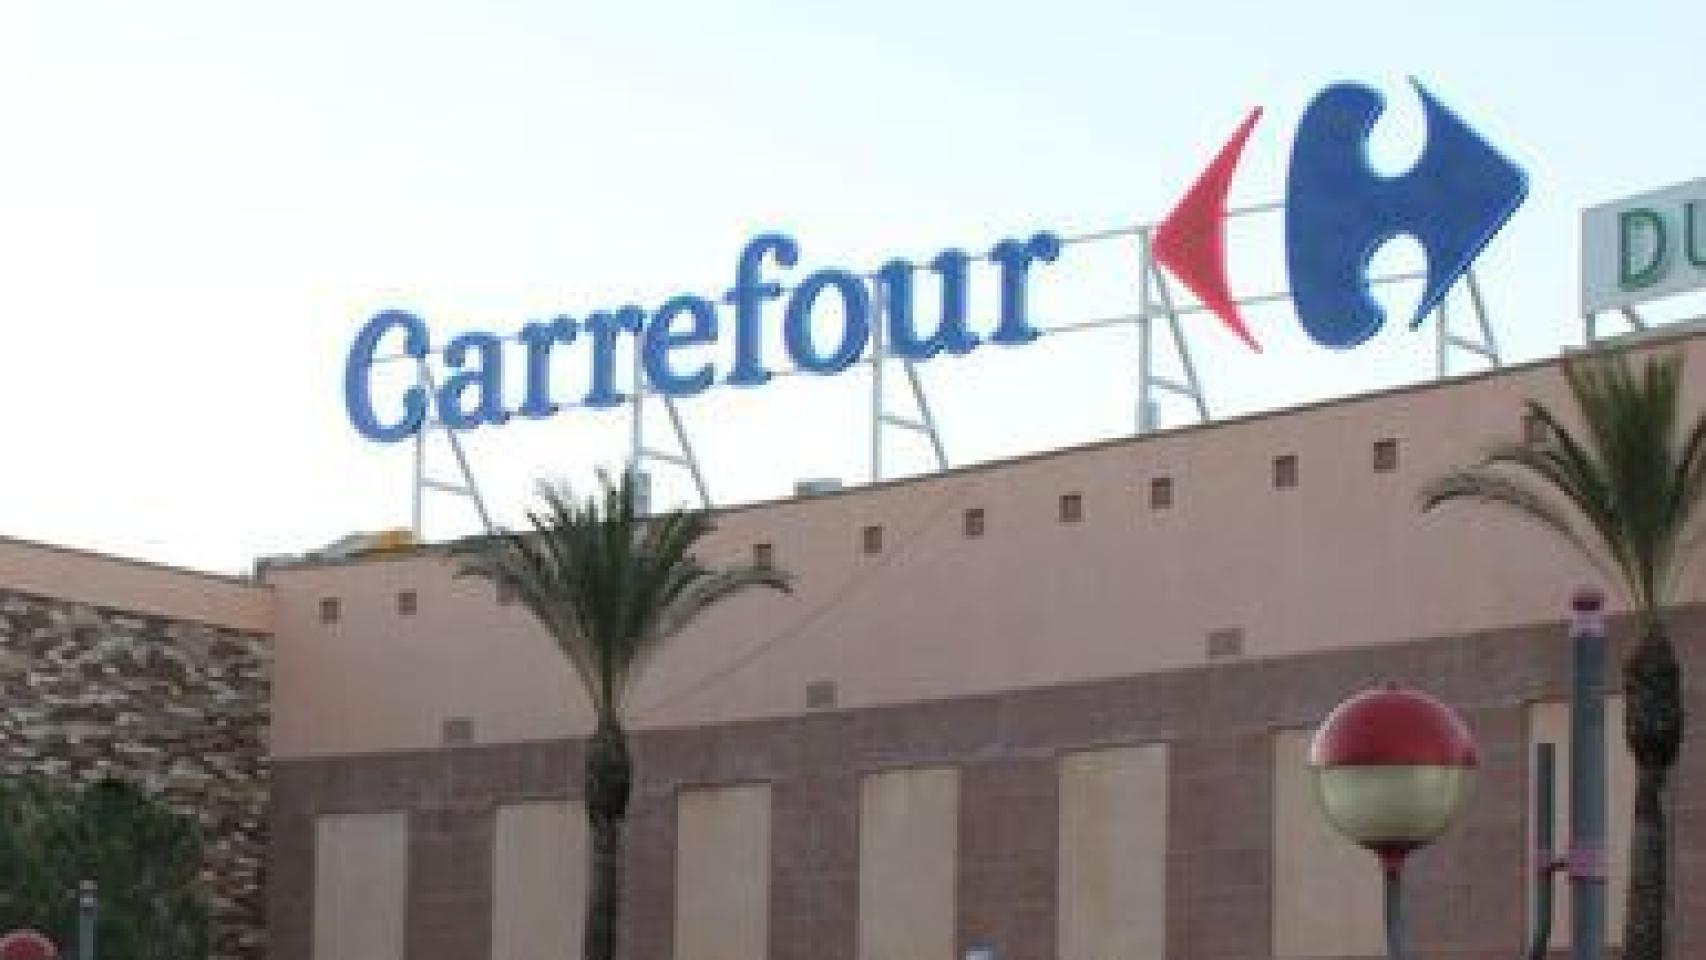 El último de Carrefour: un tendedero niveles dobles que cuesta 36,95 €